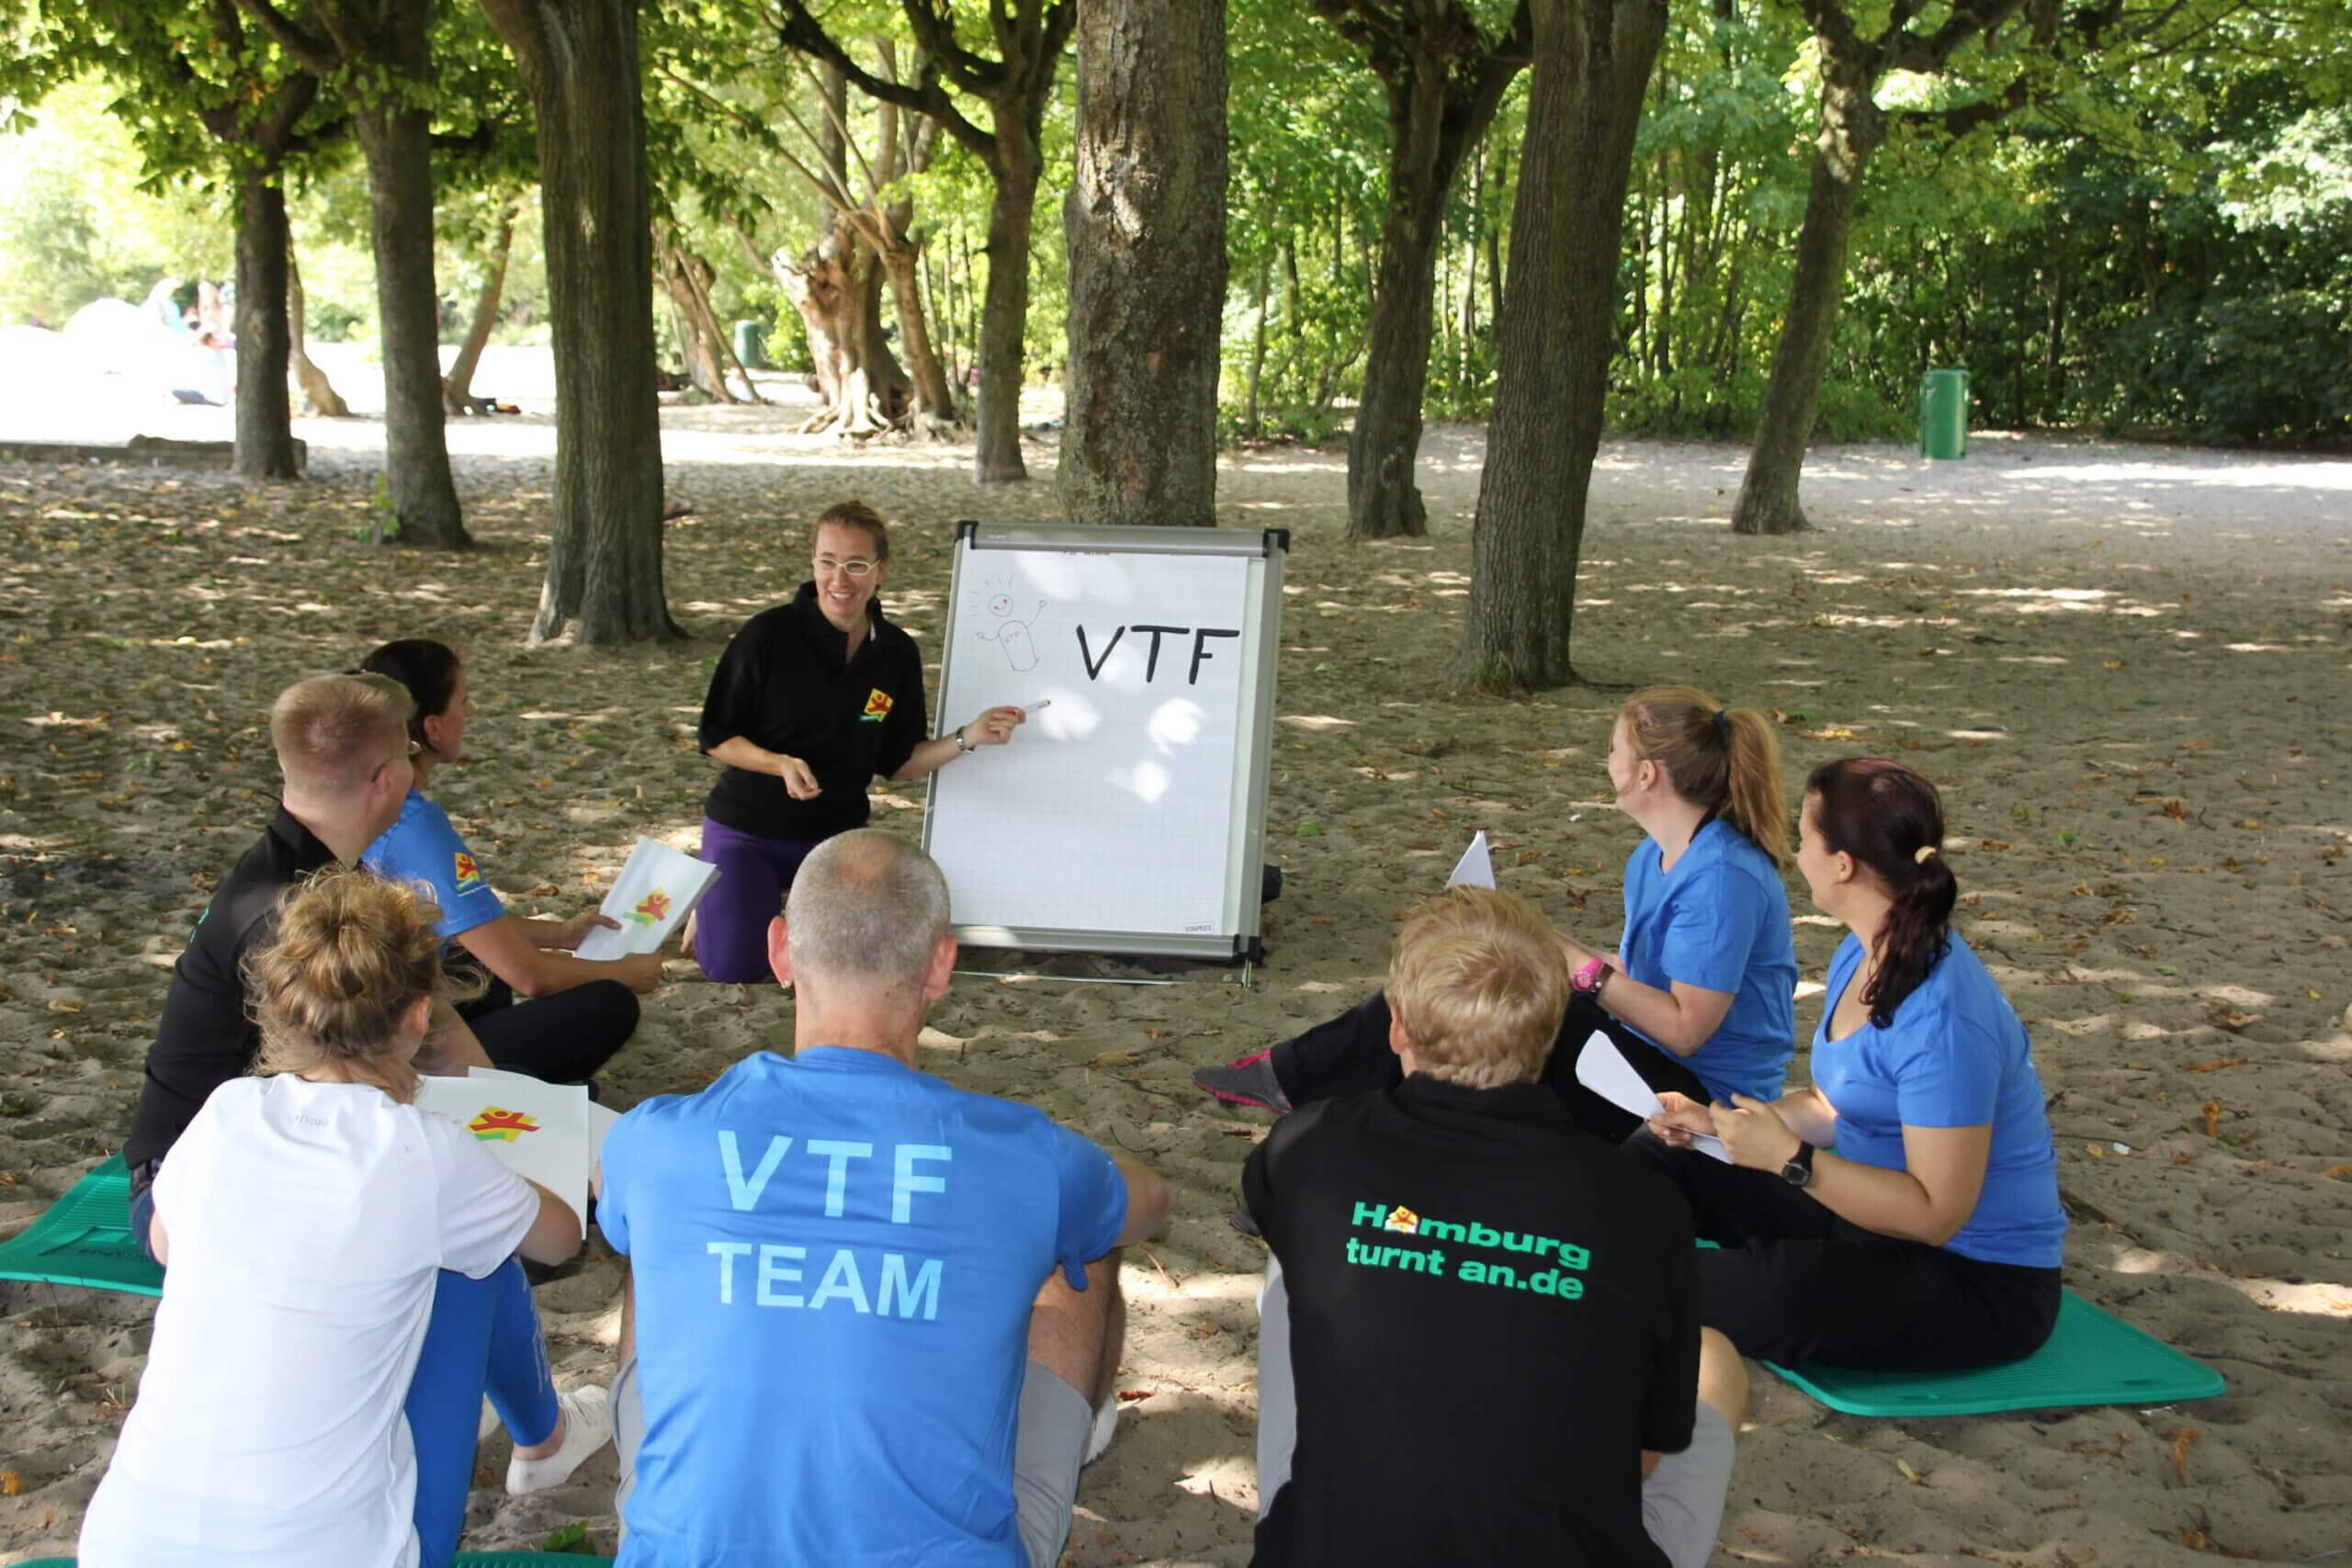 ein bundesfreiwilligen Dienst im Kreise des VTF-Team bringt Spaß. Man sieht eine Gruppe von Personen aus dem VTF-Team, deren T-Shirts sie tragen, sitzen in einem Kreis auf Gymnastikmatten im Sand. Eine Frau zeigt auf ein Flipchart, auf dem VTF steht.